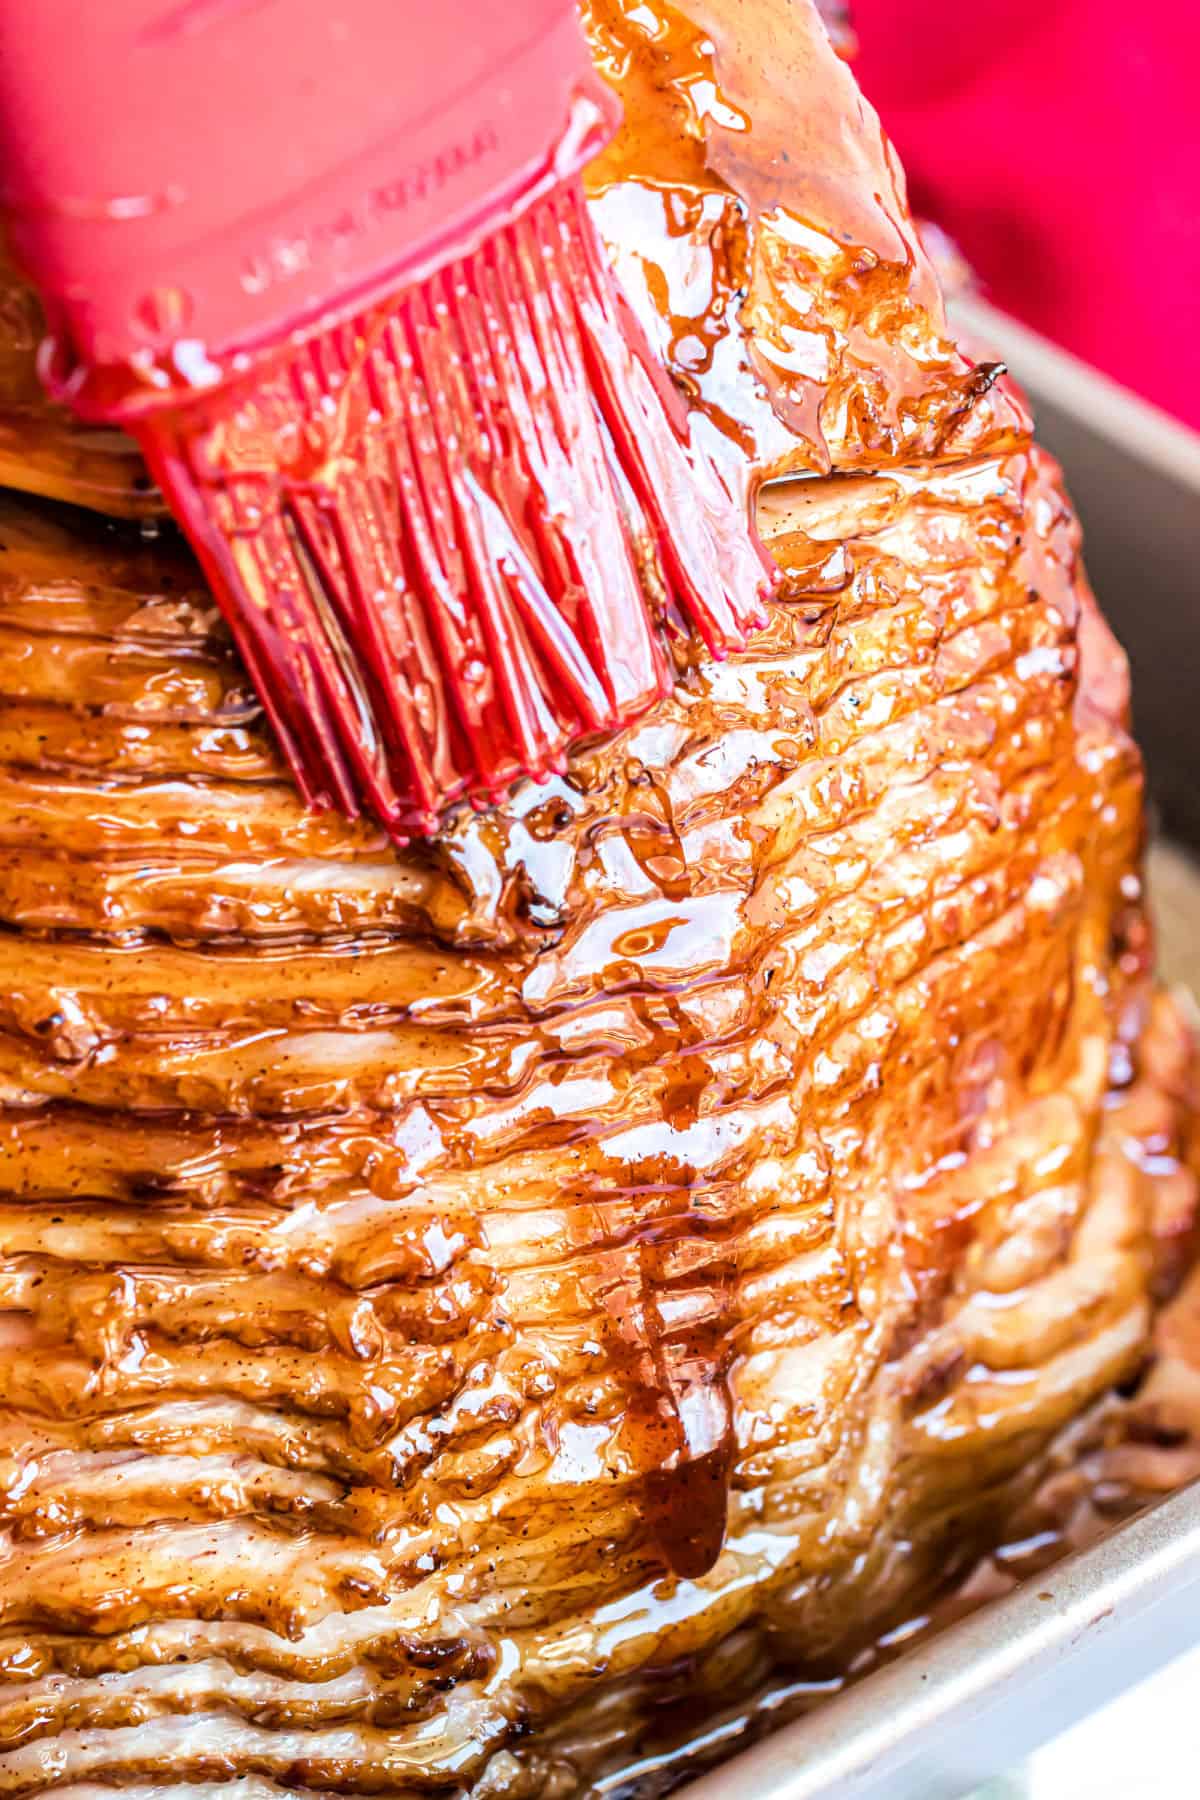 Brown sugar glaze being brushed onto a baked ham.